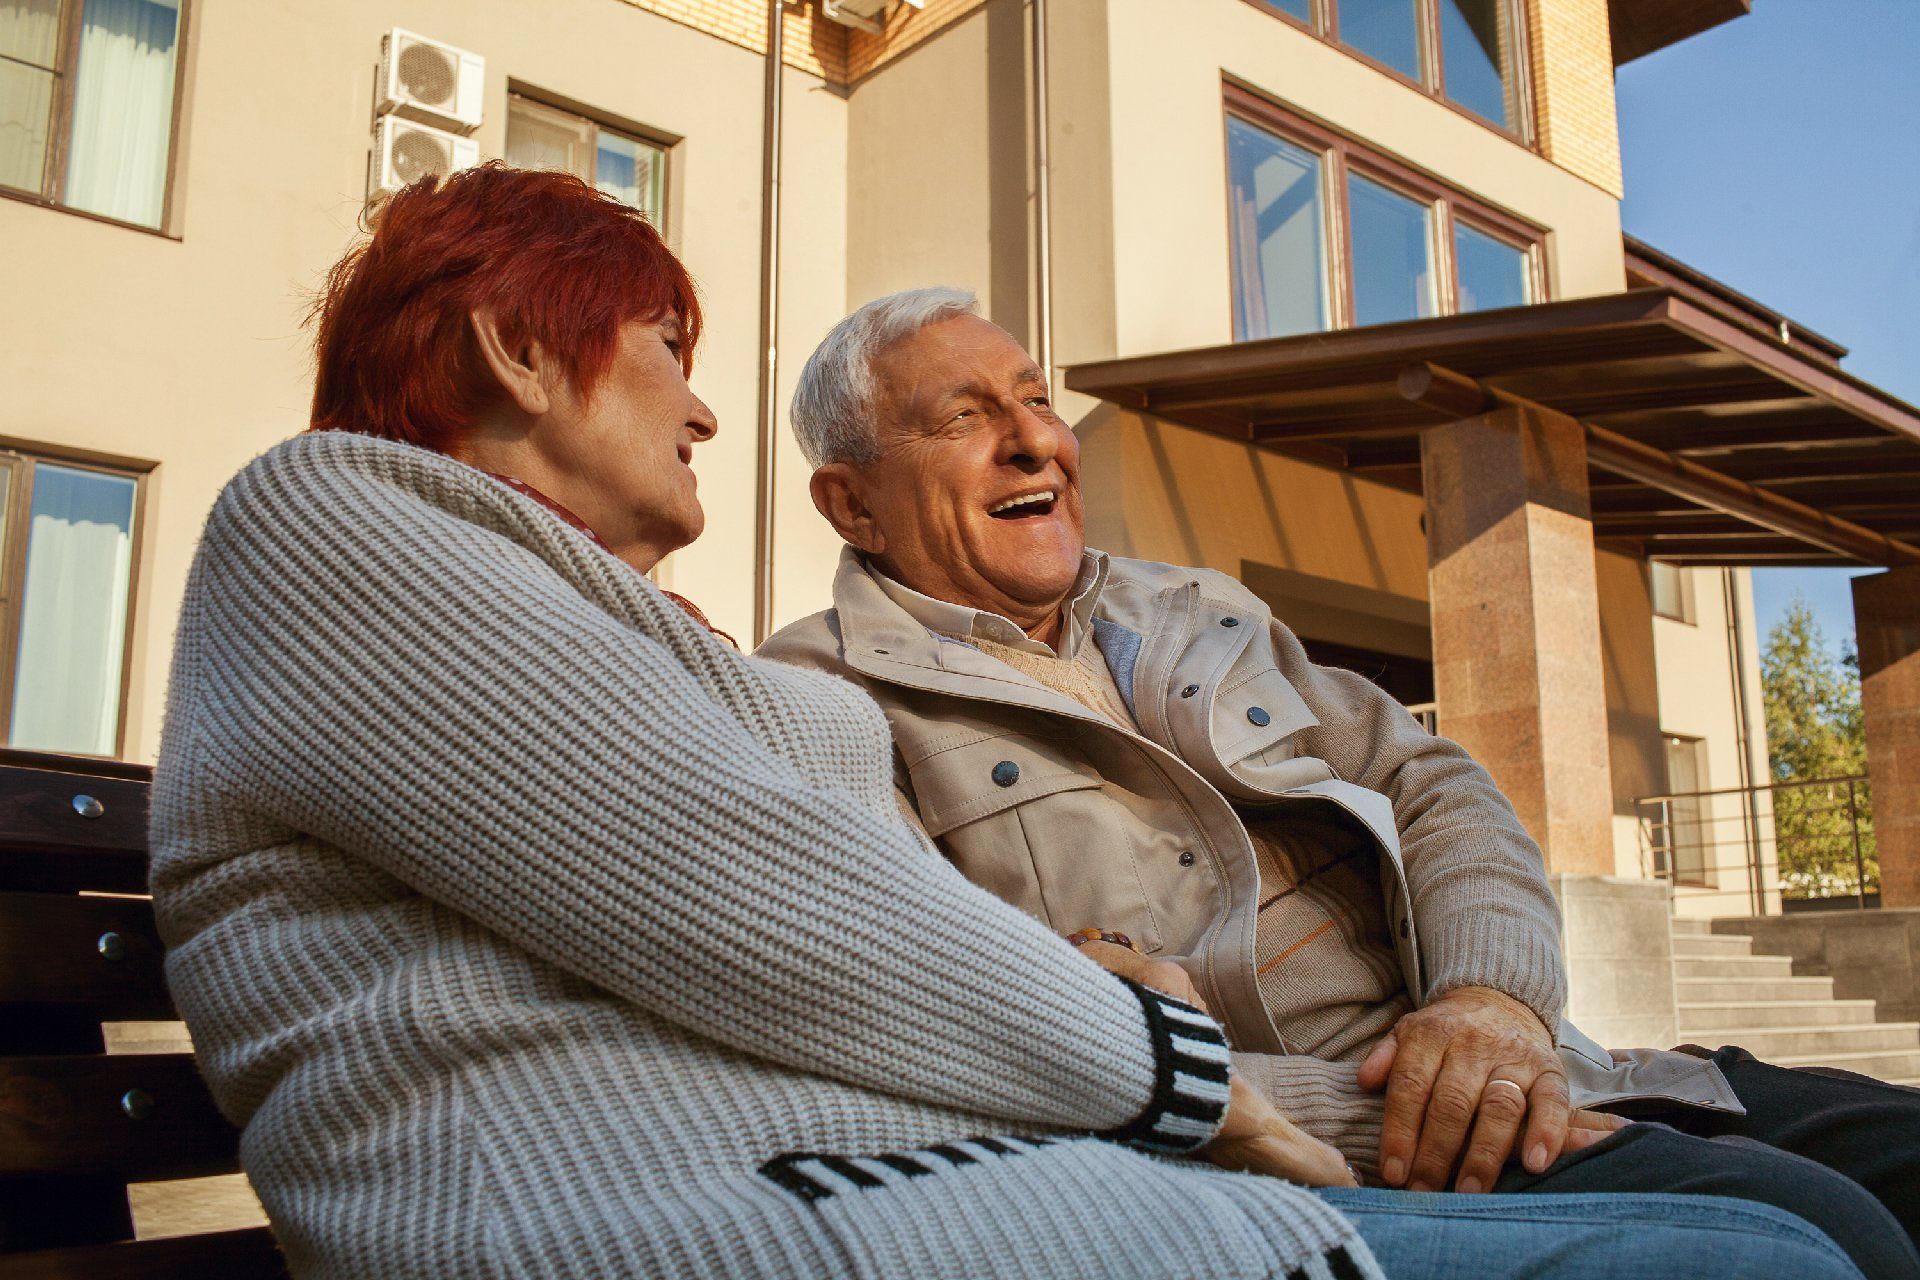 Зачастую в пенсионном возрасте пожилые люди слабеют, становятся беспомощными и нуждаются в постоянной заботе. Если в вашем доме есть престарелый или больной человек, а времени для самостоятельного ухода не хватает, обратитесь в наш дом-интернат для стариков «Долгожители» в пгт. Мокроус. Кому подойдет пансионат для престарелых? В наше учреждение принимаются как дееспособные пенсионеры, так и люди с различными отклонениями в любом возрасте. В частный пансионат для пожилых людей с деменцией и другими отклонениями вы можете обратиться при таких сложных заболеваниях, как: 1.	Альцгеймер. 2.	Паркинсонизм. 3.	Рассеянный или старческий склероз. 4.	Почечная недостаточность. 5.	Недержание мочи и кала. 6.	Атеросклероз. 7.	Онкология. 8.	Сахарный диабет. 9.	Депрессия. 10.	Невроз. И многие другие болезни. В дом-интернат для престарелых и инвалидов «Долгожители» в пгт. Мокроус можно обратиться при серьезных умственных или физических нарушениях. Наши сиделки обеспечат круглосуточную заботу и сделают всё возможное, чтобы облегчить состояние пенсионера. Мы проводим реабилитационный период и восстановление за дополнительную плату, сёстры милосердия могут дежурить у кровати круглые сутки, если это понадобится и сменяются несколько раз в день, поэтому пенсионеры всегда находятся под надежным контролем. Если нужно, мы сами заменим подгузники, катетеры, мочеприемники, калосборники, поменяем постельное белье и одежду, поможем в организации питания. Наши повара готовят вкусное домашнее питание по меню меню, учитываются все особенности организма и рекомендованная диета. Частный дом престарелых предлагает различные тарифы!  В нашем пансионате «Долгожители» в пгт. Мокроус, вы самостоятельно можете выбрать комнату для проживания, подселить пенсионера в двухместные, трехместные и четырехместные номера. Если необходимо одноместное проживание и полный покой, это также можно организовать при условии выкупа всей комнаты. Наш пансионат для престарелых лежачих больных оборудован всем необходимым, чтобы даже в тяжёлом состоянии пенсионеру жилось комф